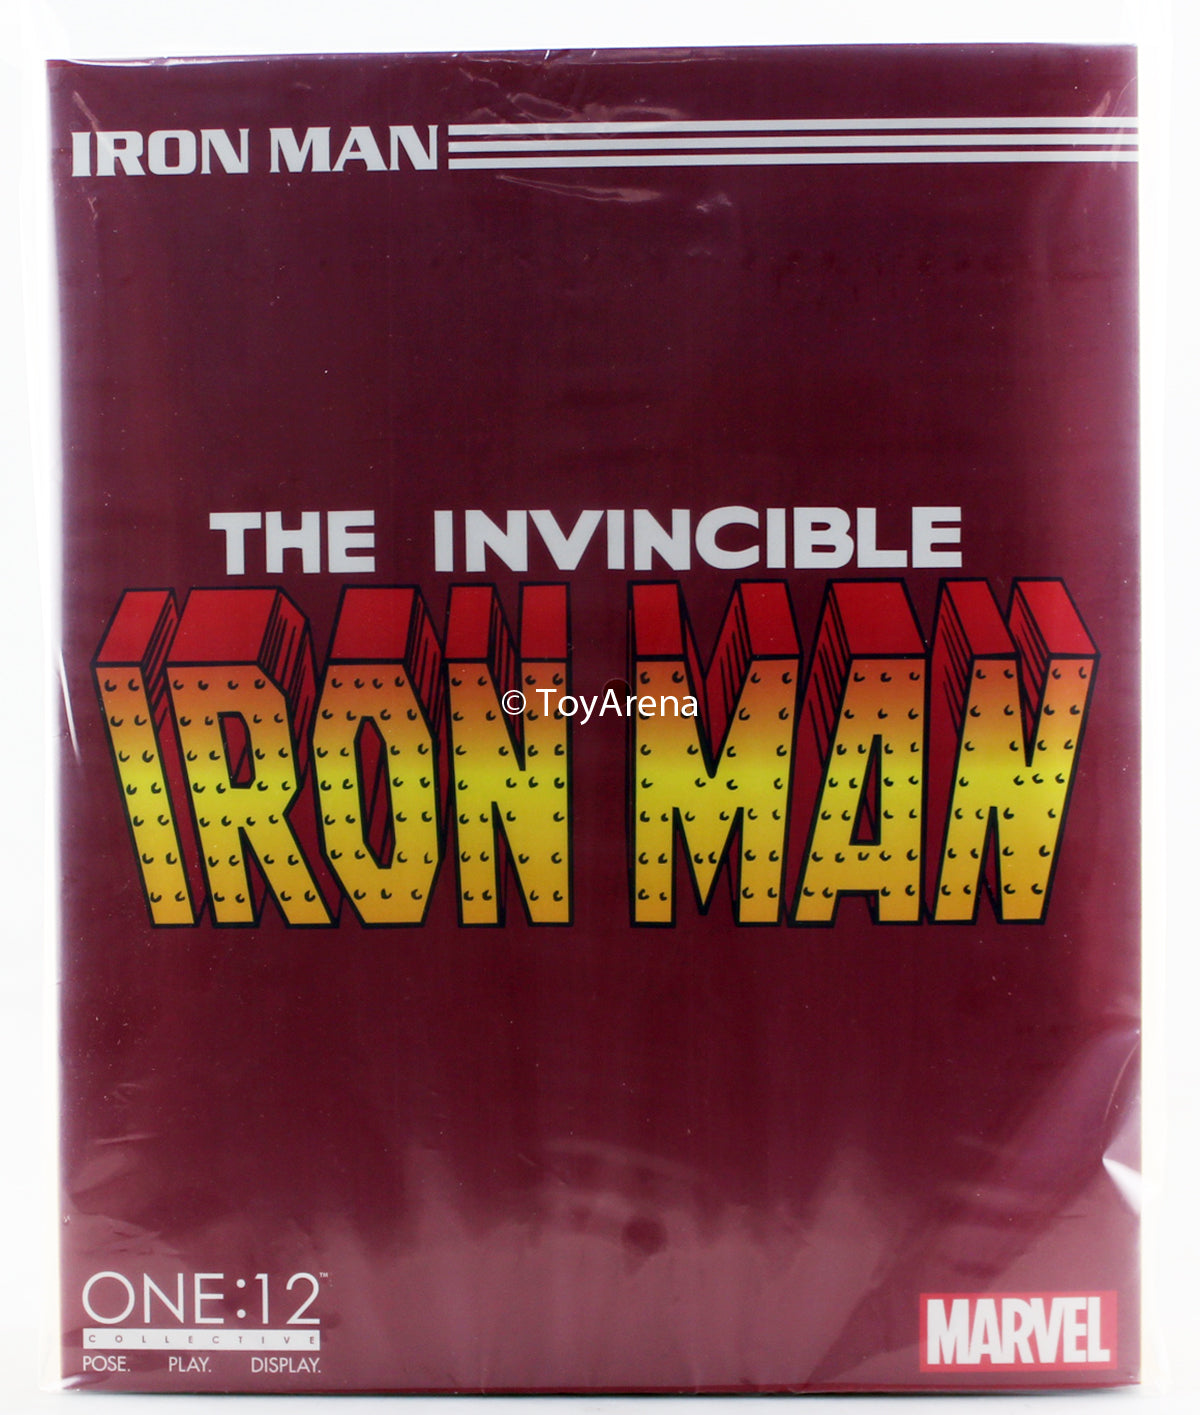 Mezco Toyz ONE:12 Collective: The Invincible Iron Man Action Figure